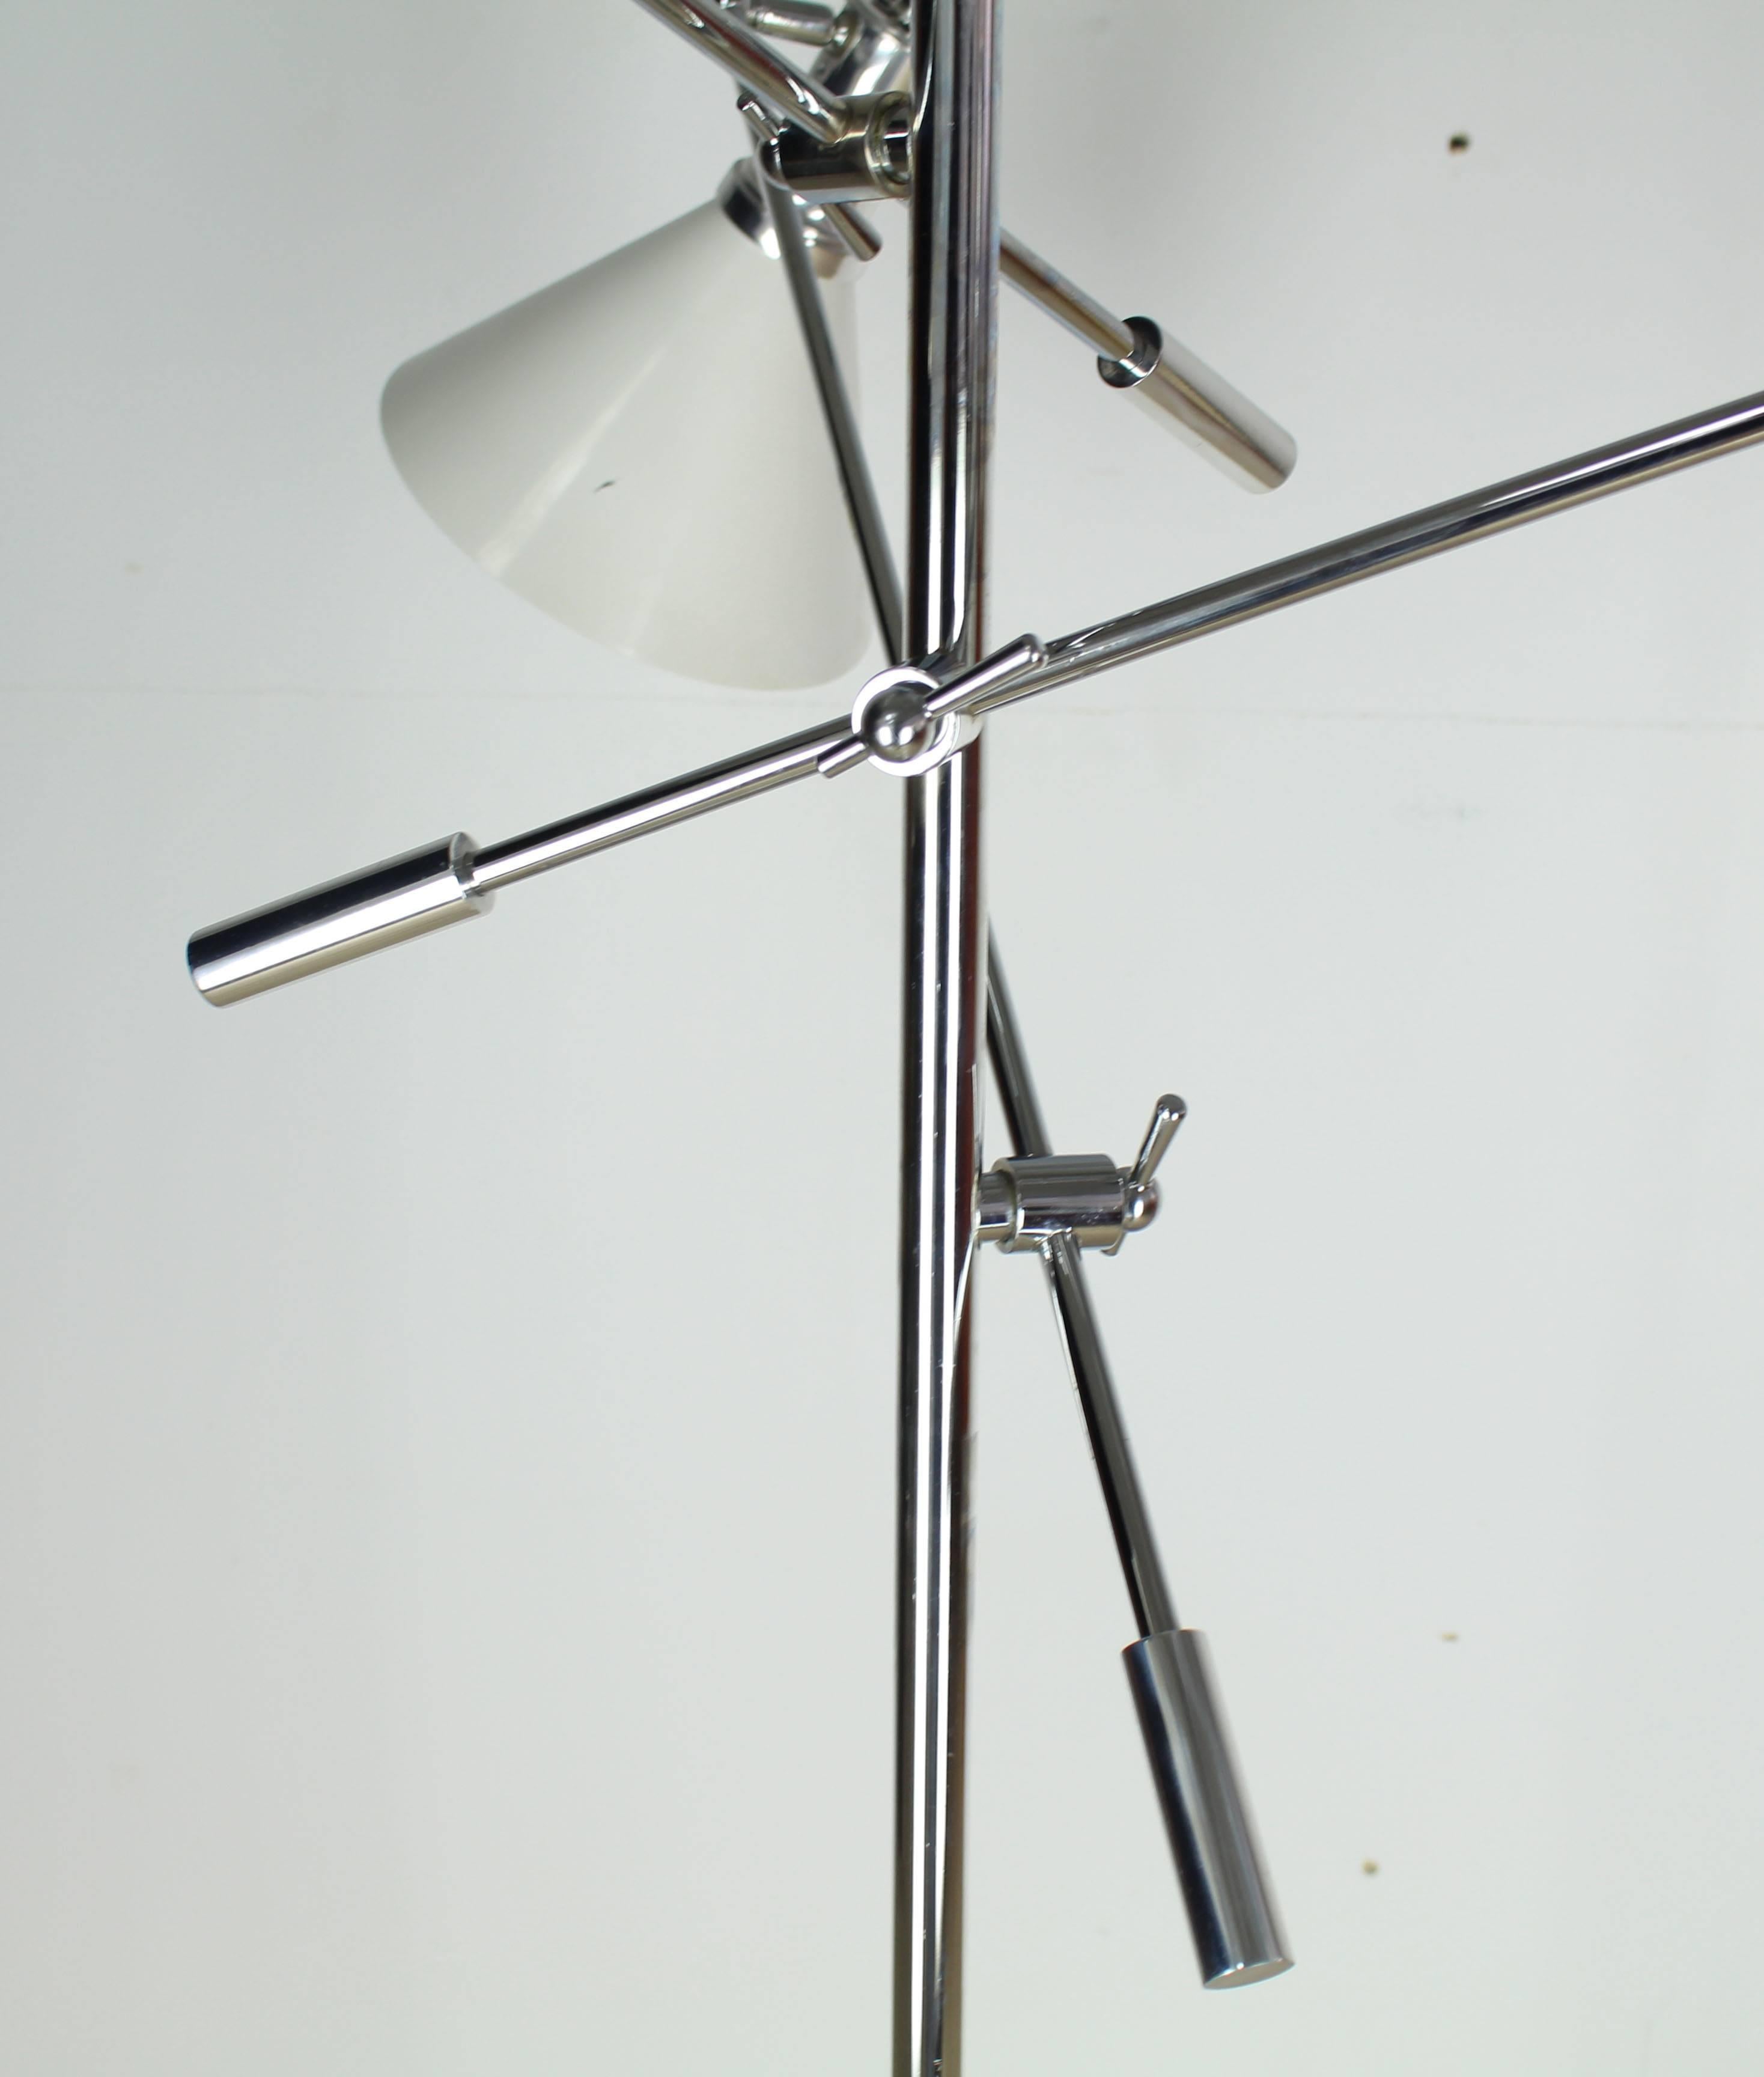 Hochwertige verstellbare Chrom drei Arme Arredoluce Triennale Stil Stehleuchte Leuchte. Jede Steckdose hat einen Dreiwege-Schalter.